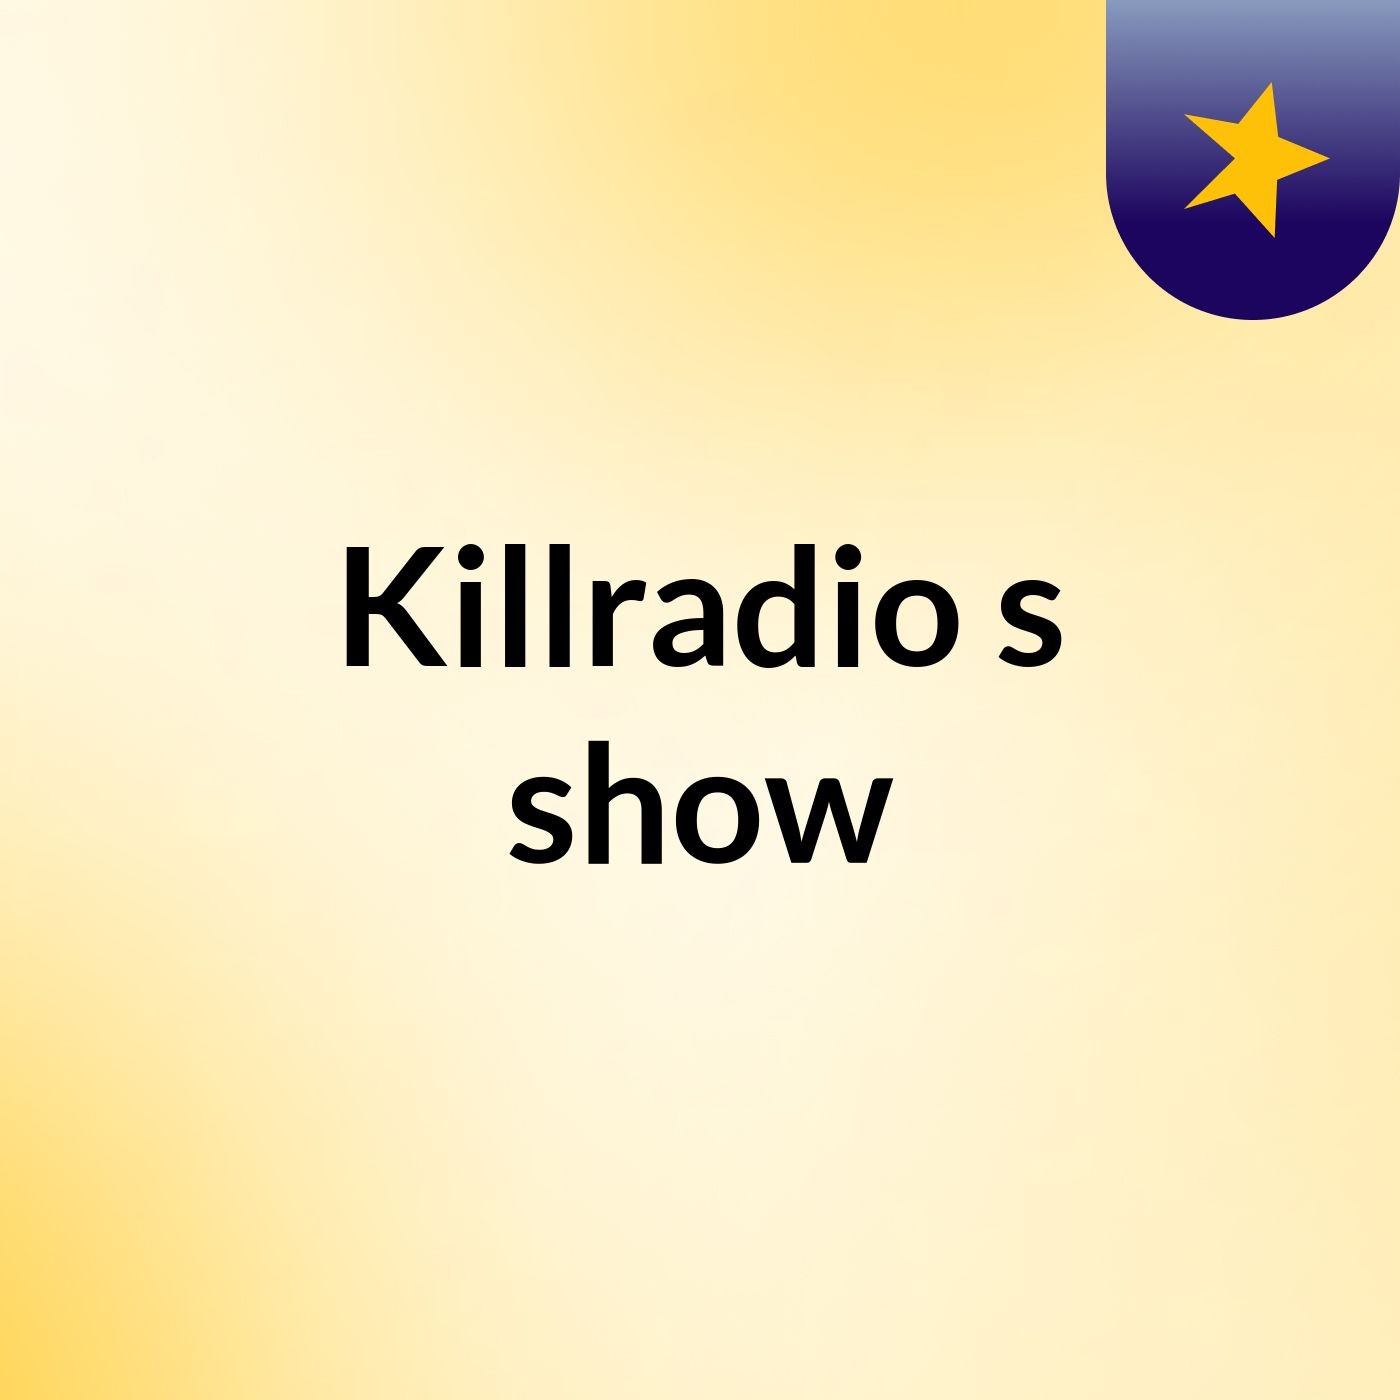 Killradio's show